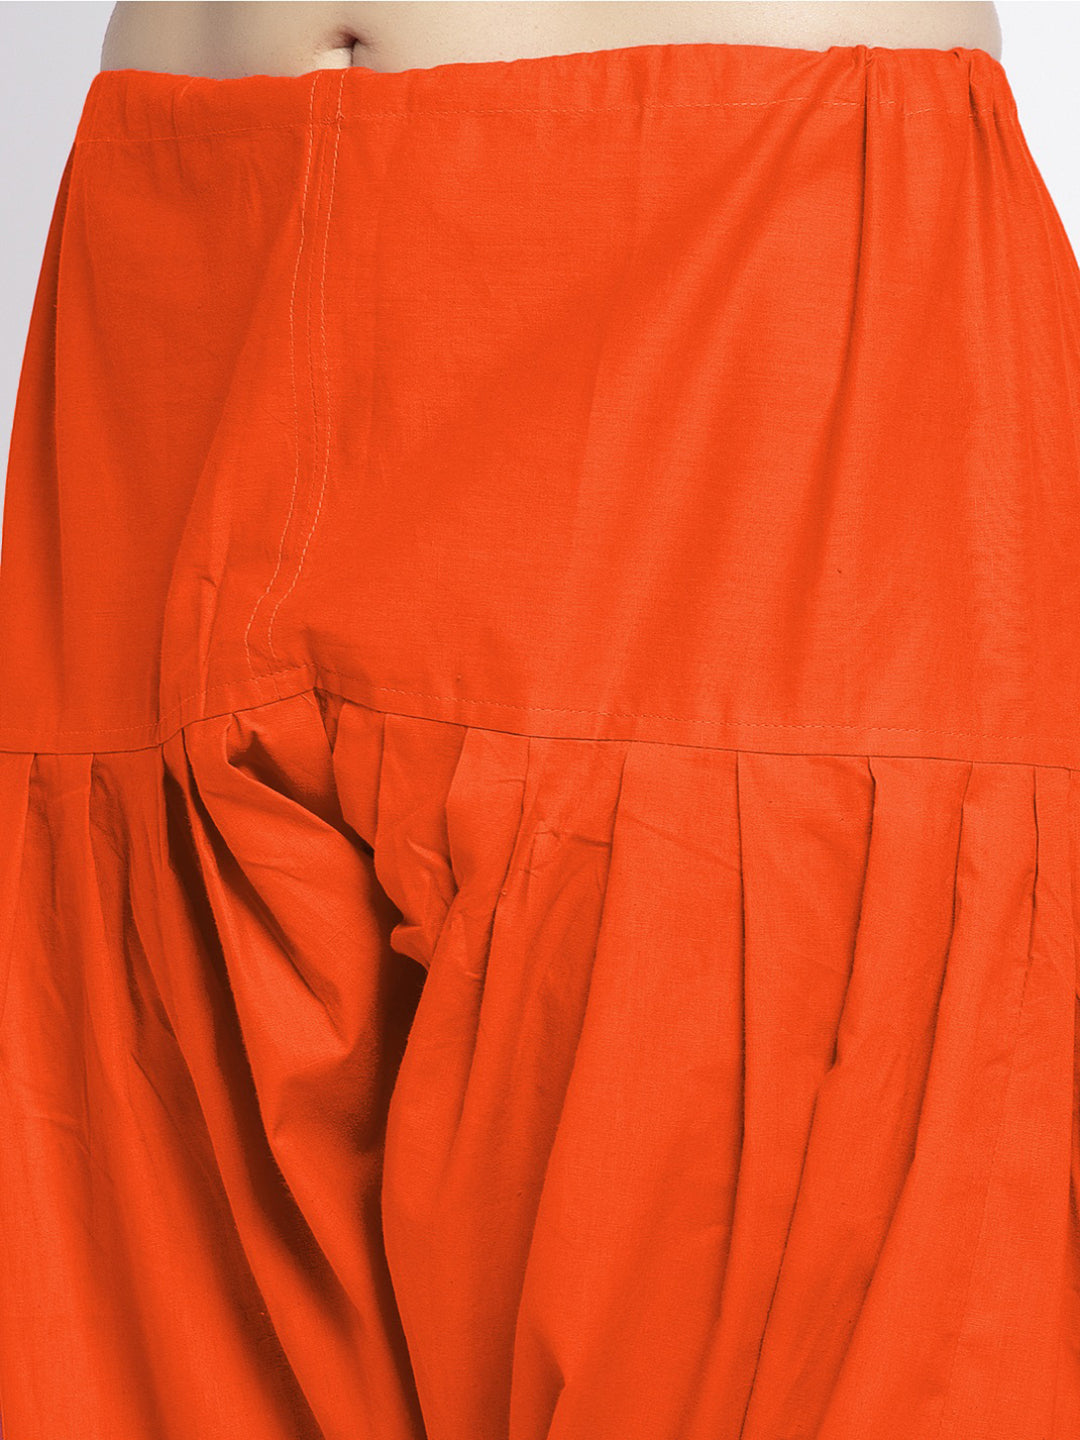 Orange Solid Cotton Salwar Pant